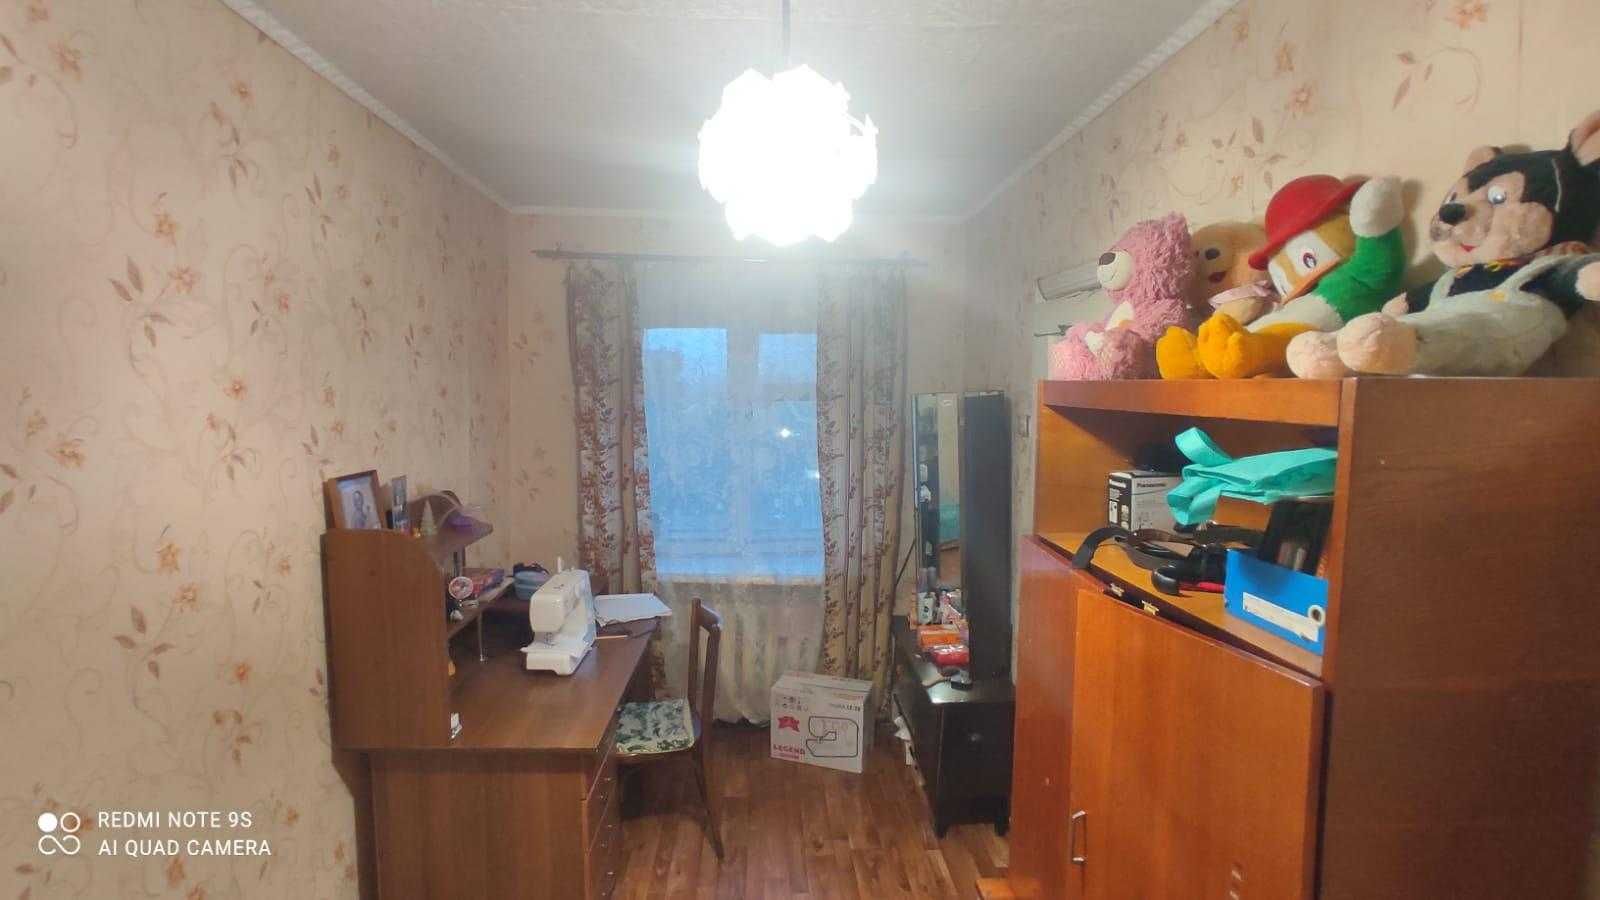 В продаже 3-х комнатная квартира на среднем этаже в Сортировке